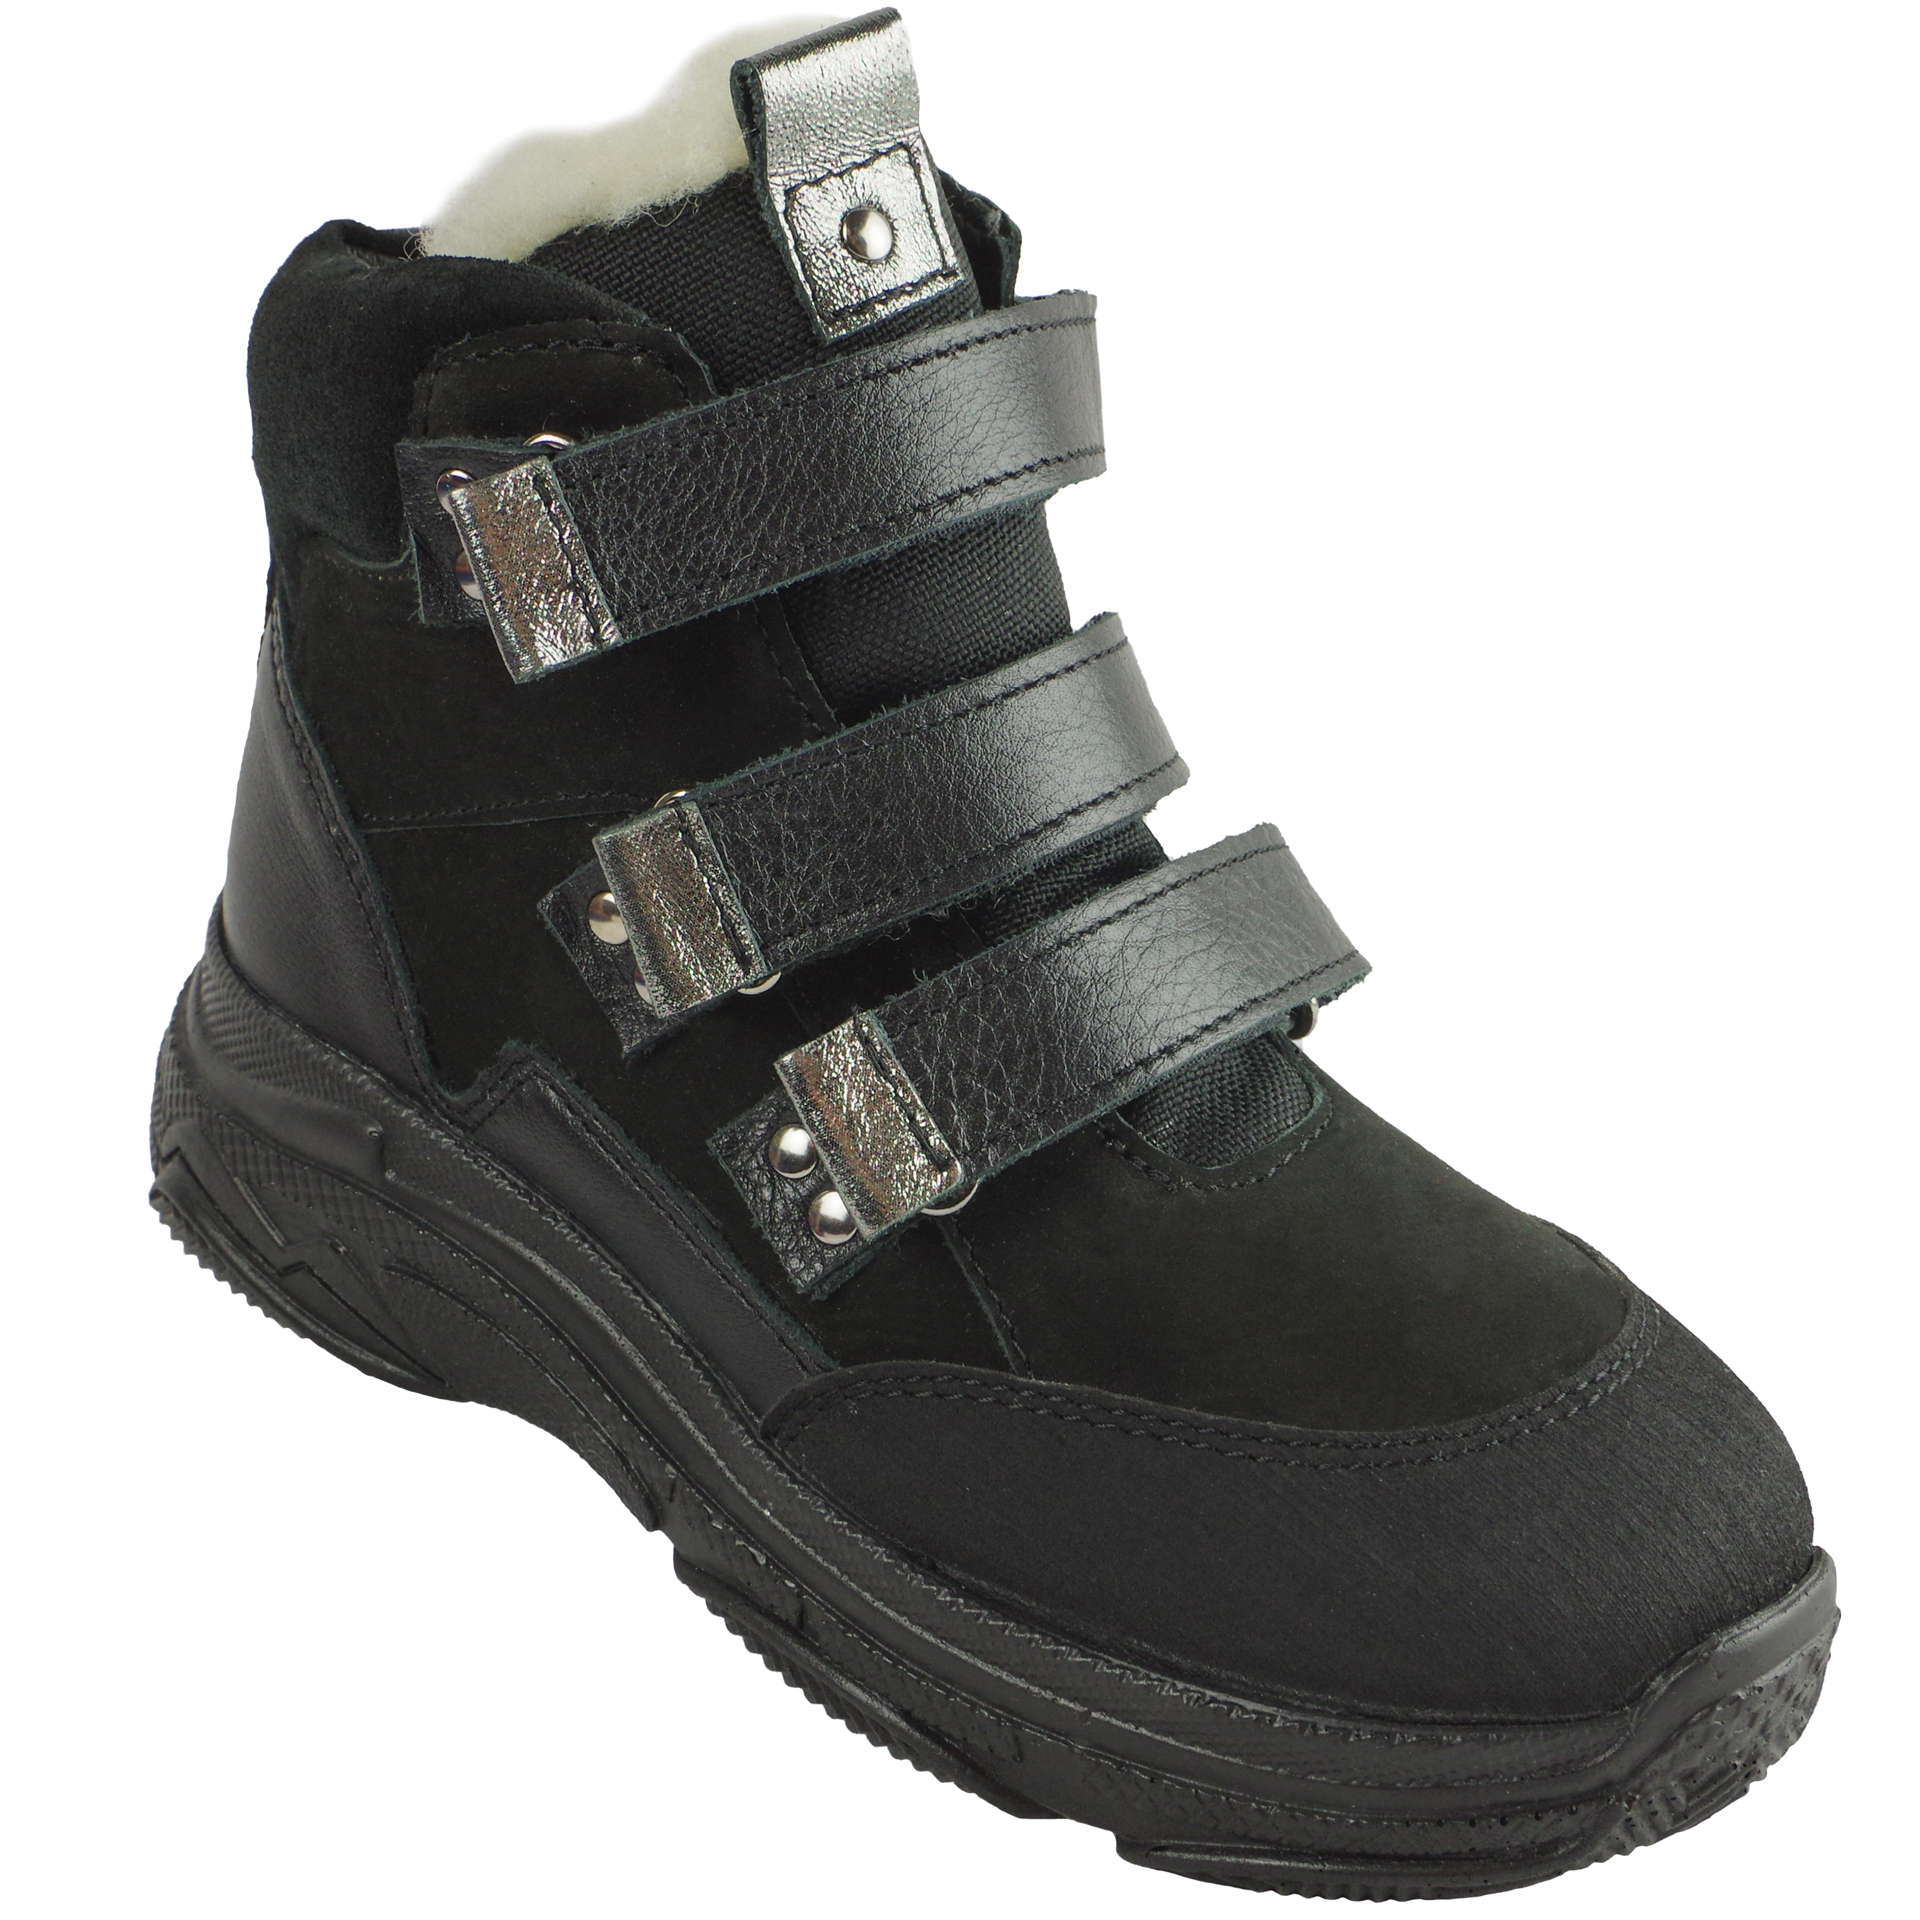 Зимние ботинки детские (2081) материал Нубук, цвет Черный  для девочки 31-38 размеры – Sole Kids, Днепр. Фото 1